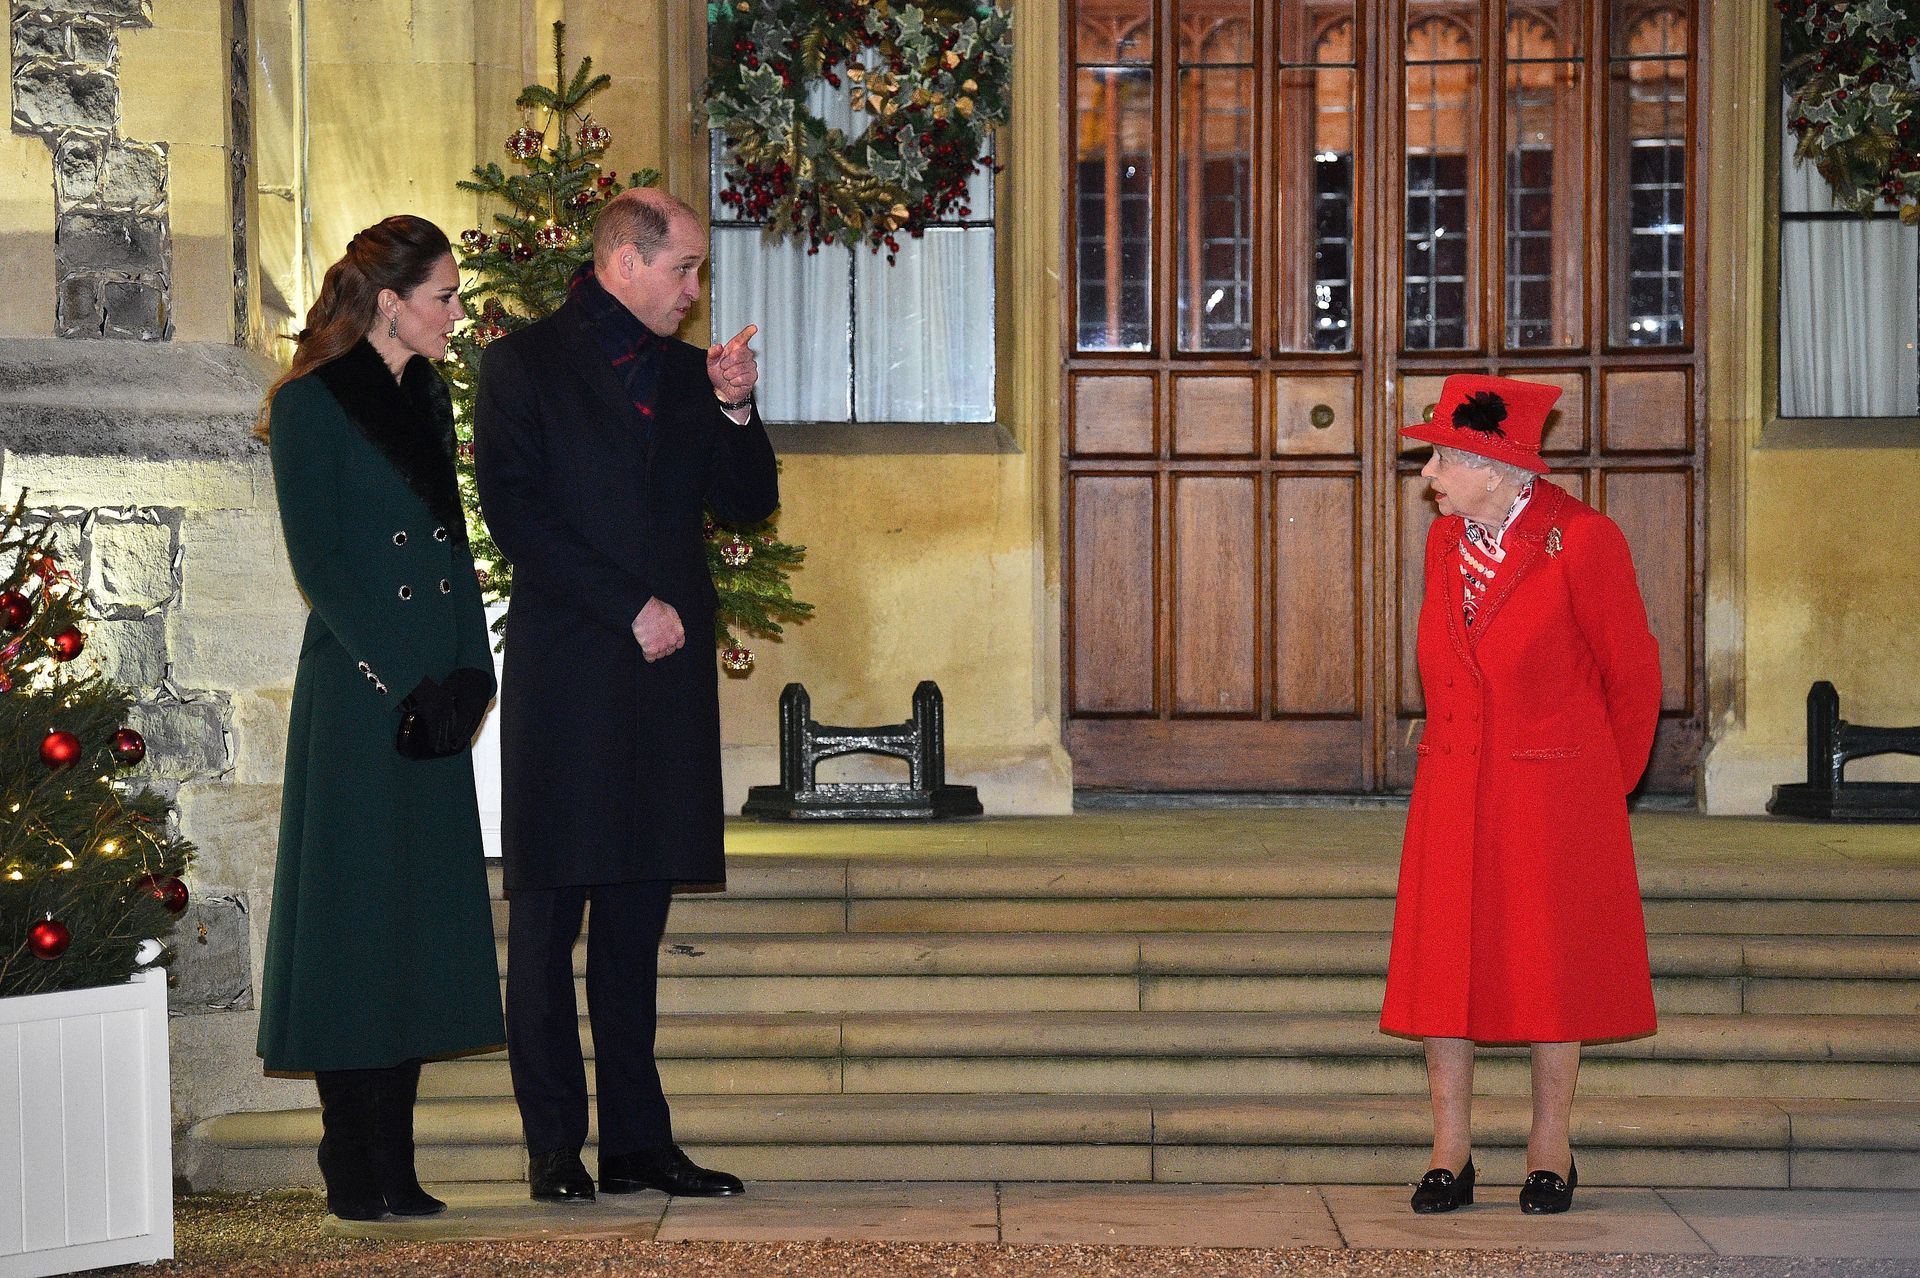 Op 8 december 2020 bedanken koningin Elizabeth, prins William, Catherine, de prinses van Wales vrijwilligers voor het werk dat ze deden tijdens de Coronapandemie.